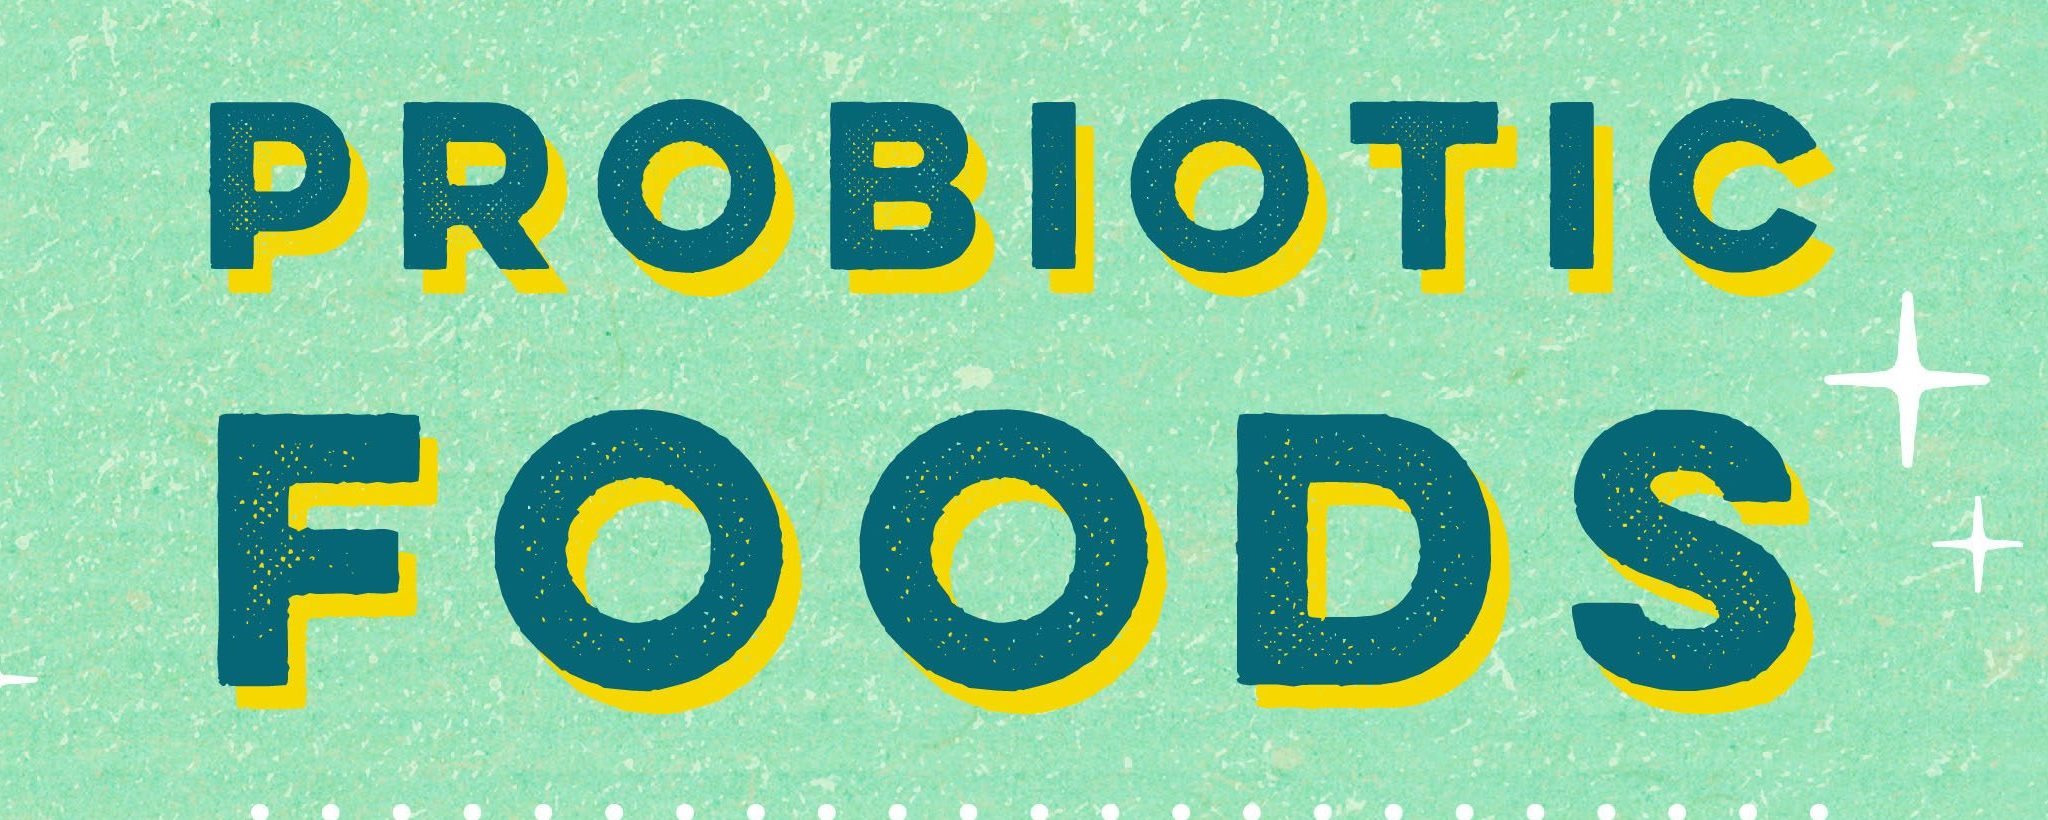 De-mystifying Probiotic Foods | HelloFresh Food Blog